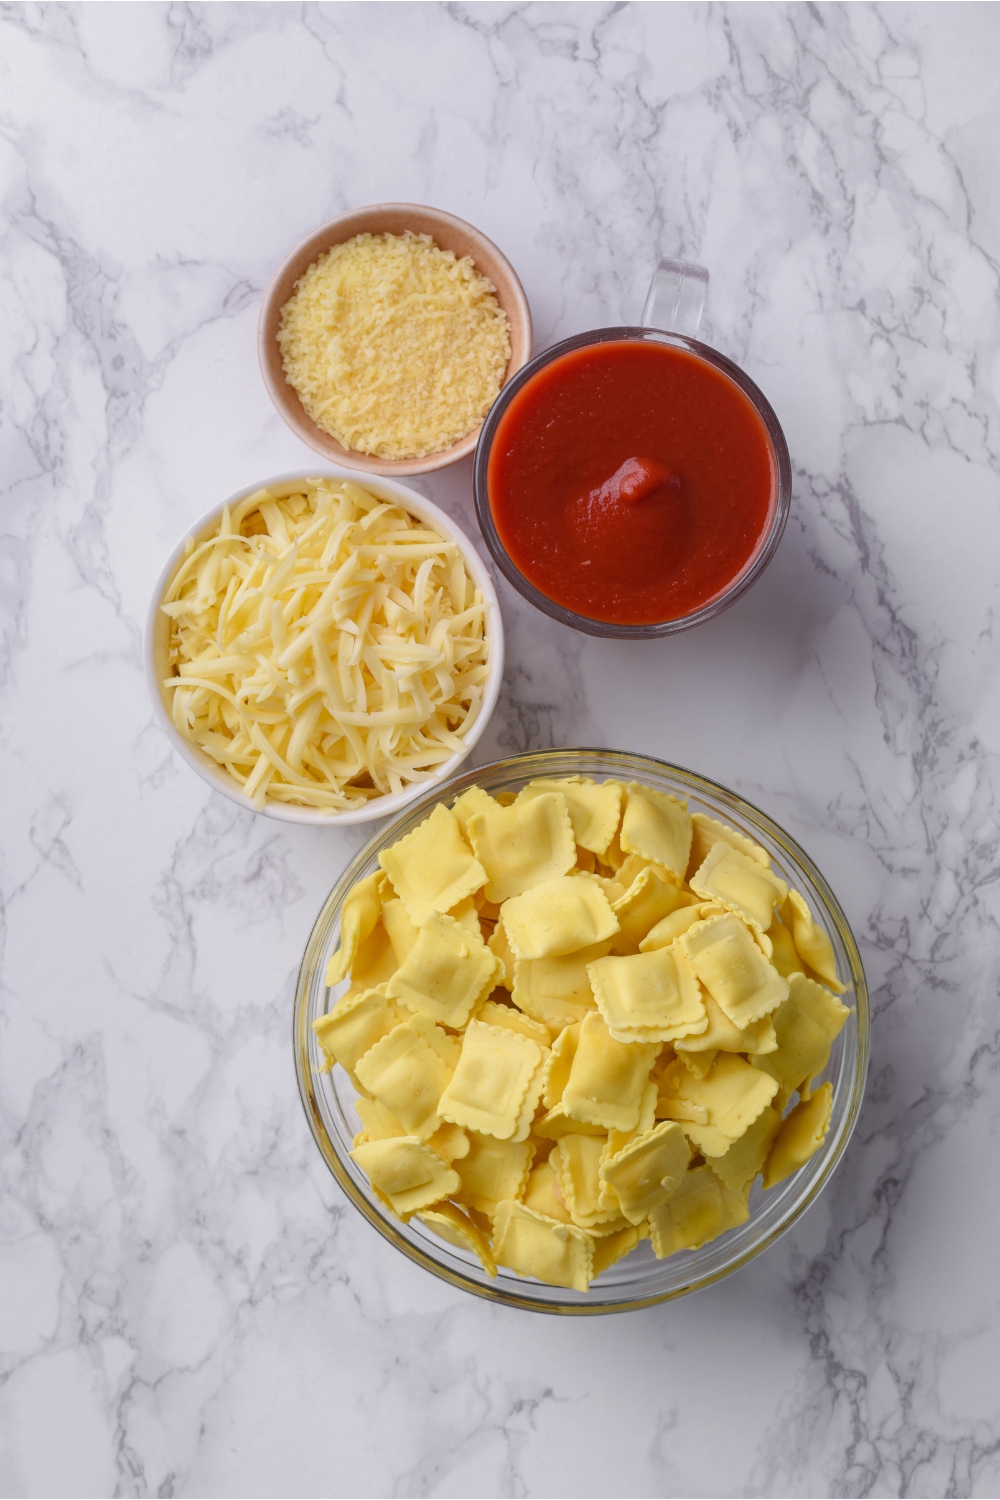 Bowls of parmesan cheese, marinara sauce, shredded mozzarella cheese, and mini raviolis.